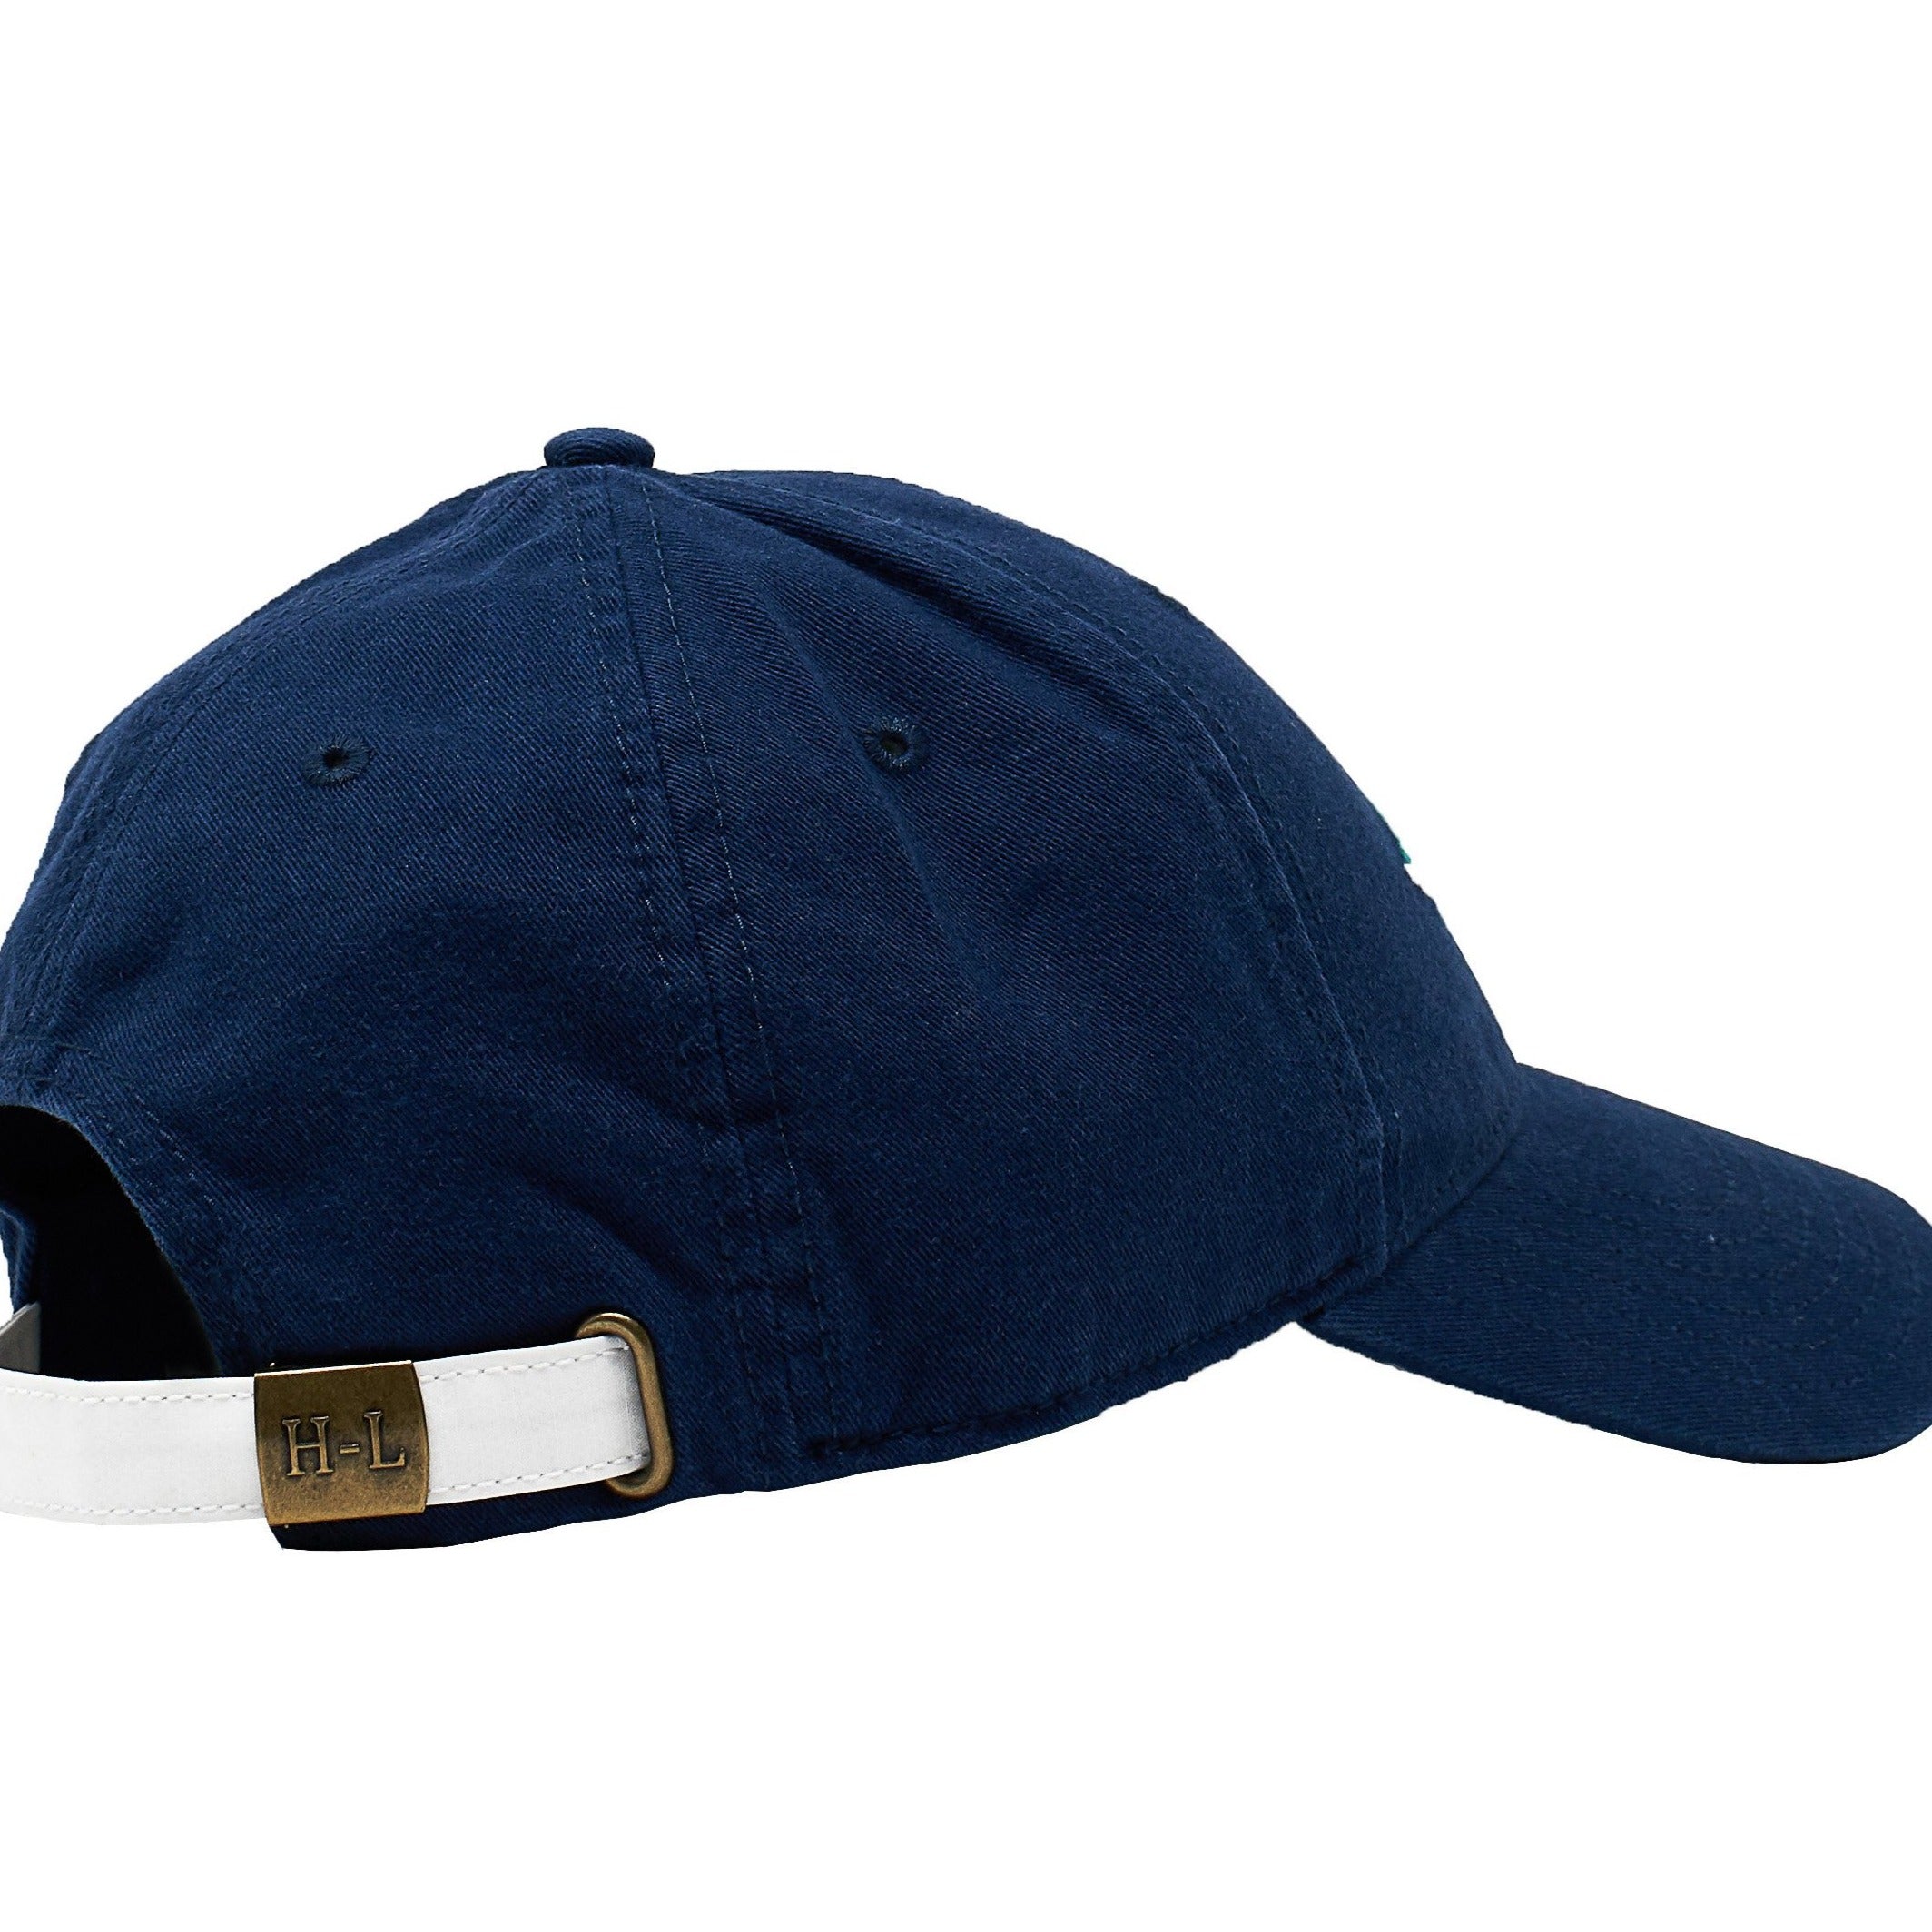 East Coast on Navy Blue Hat